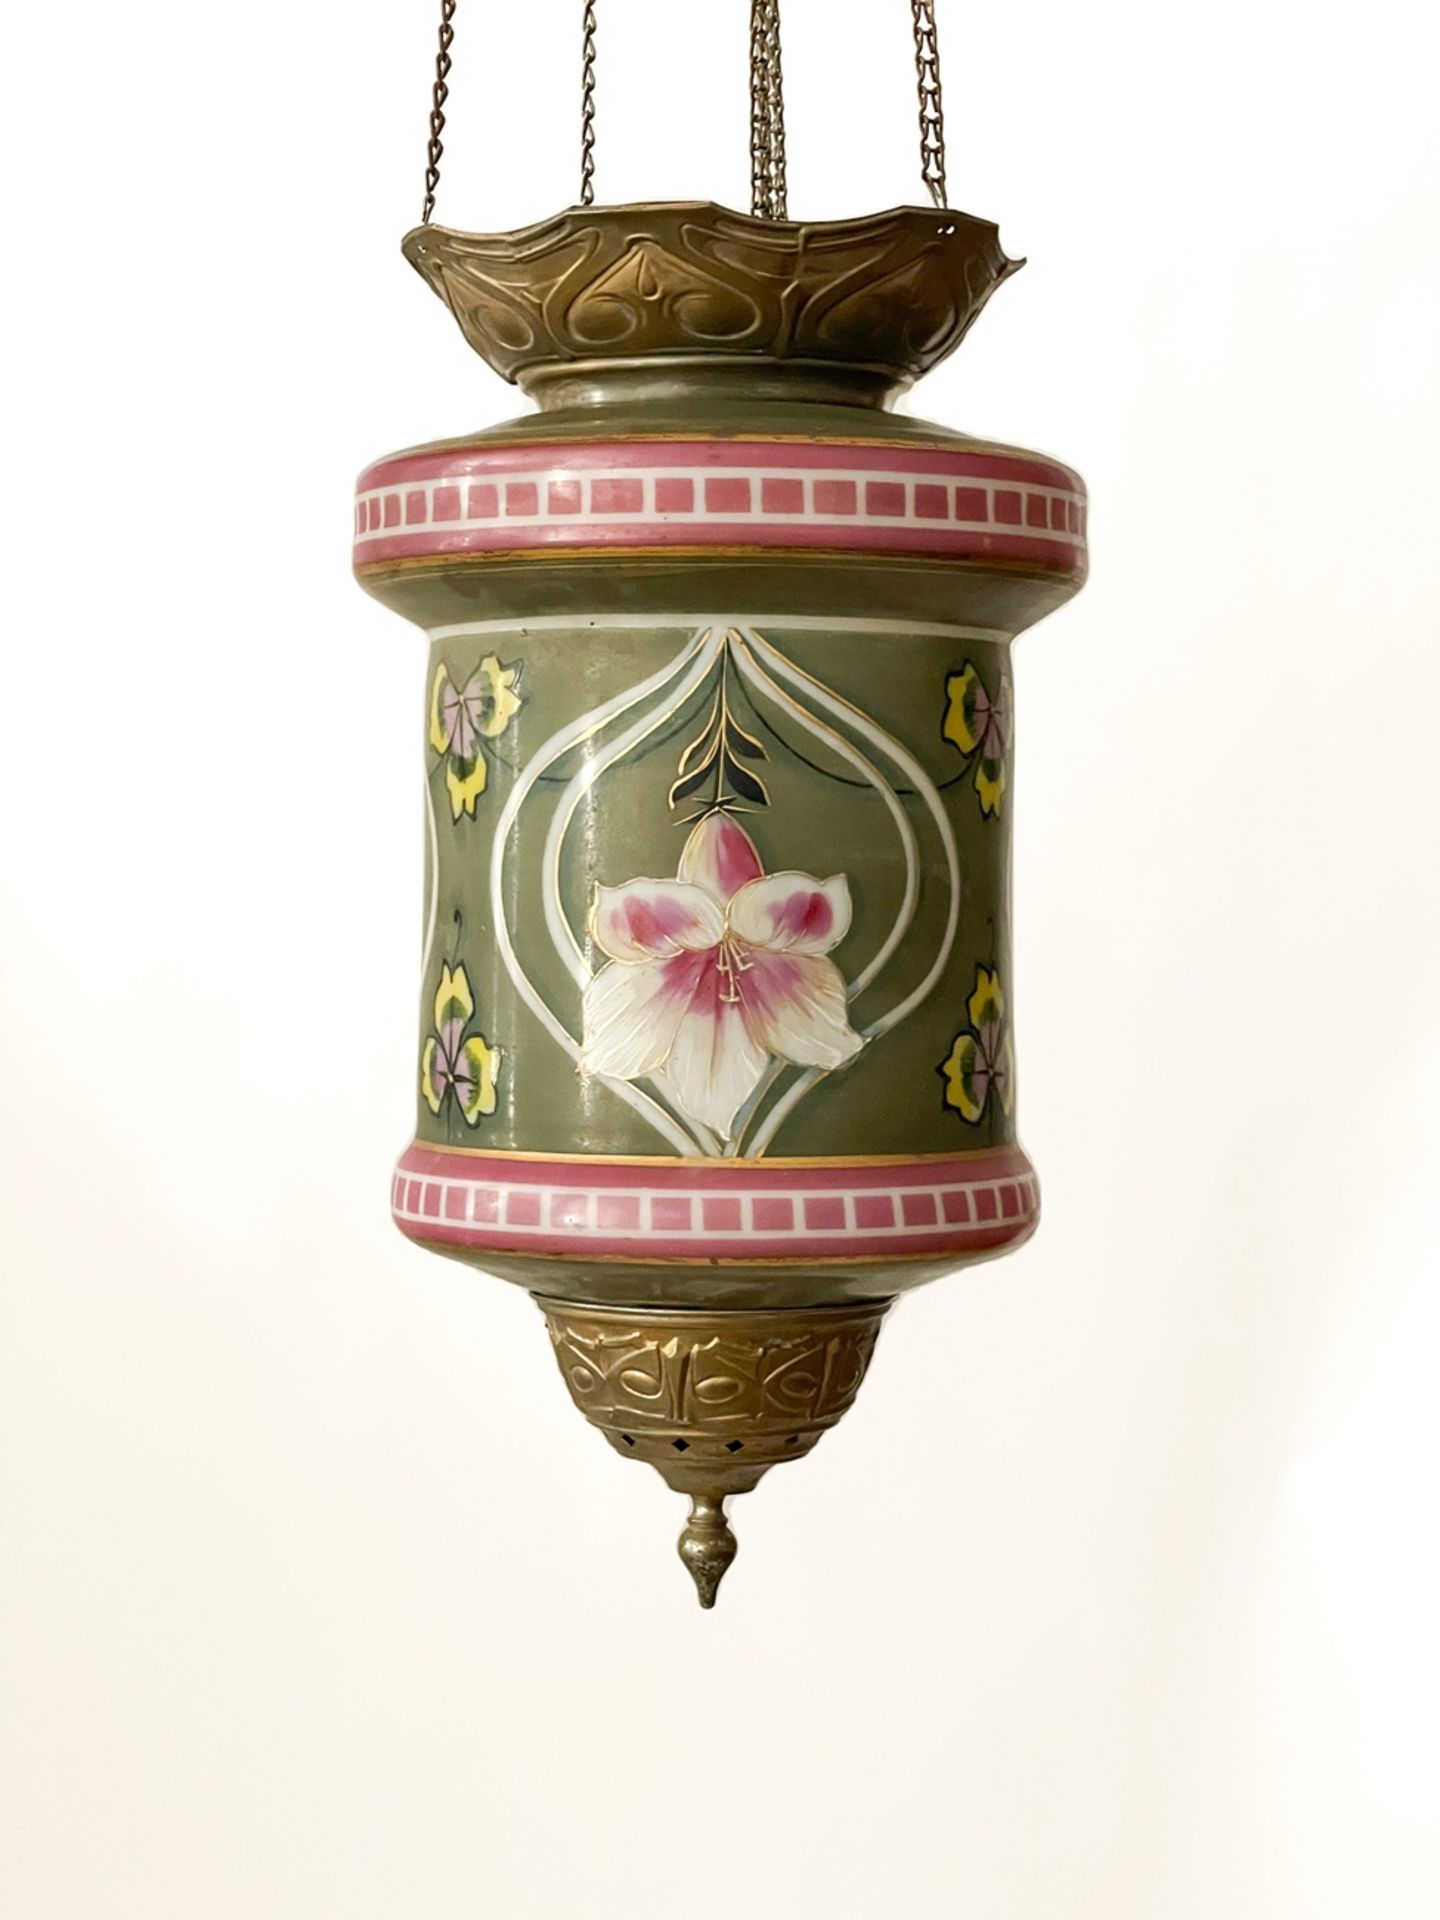 Bemalte Jugenstil Zuglampe - Image 2 of 6